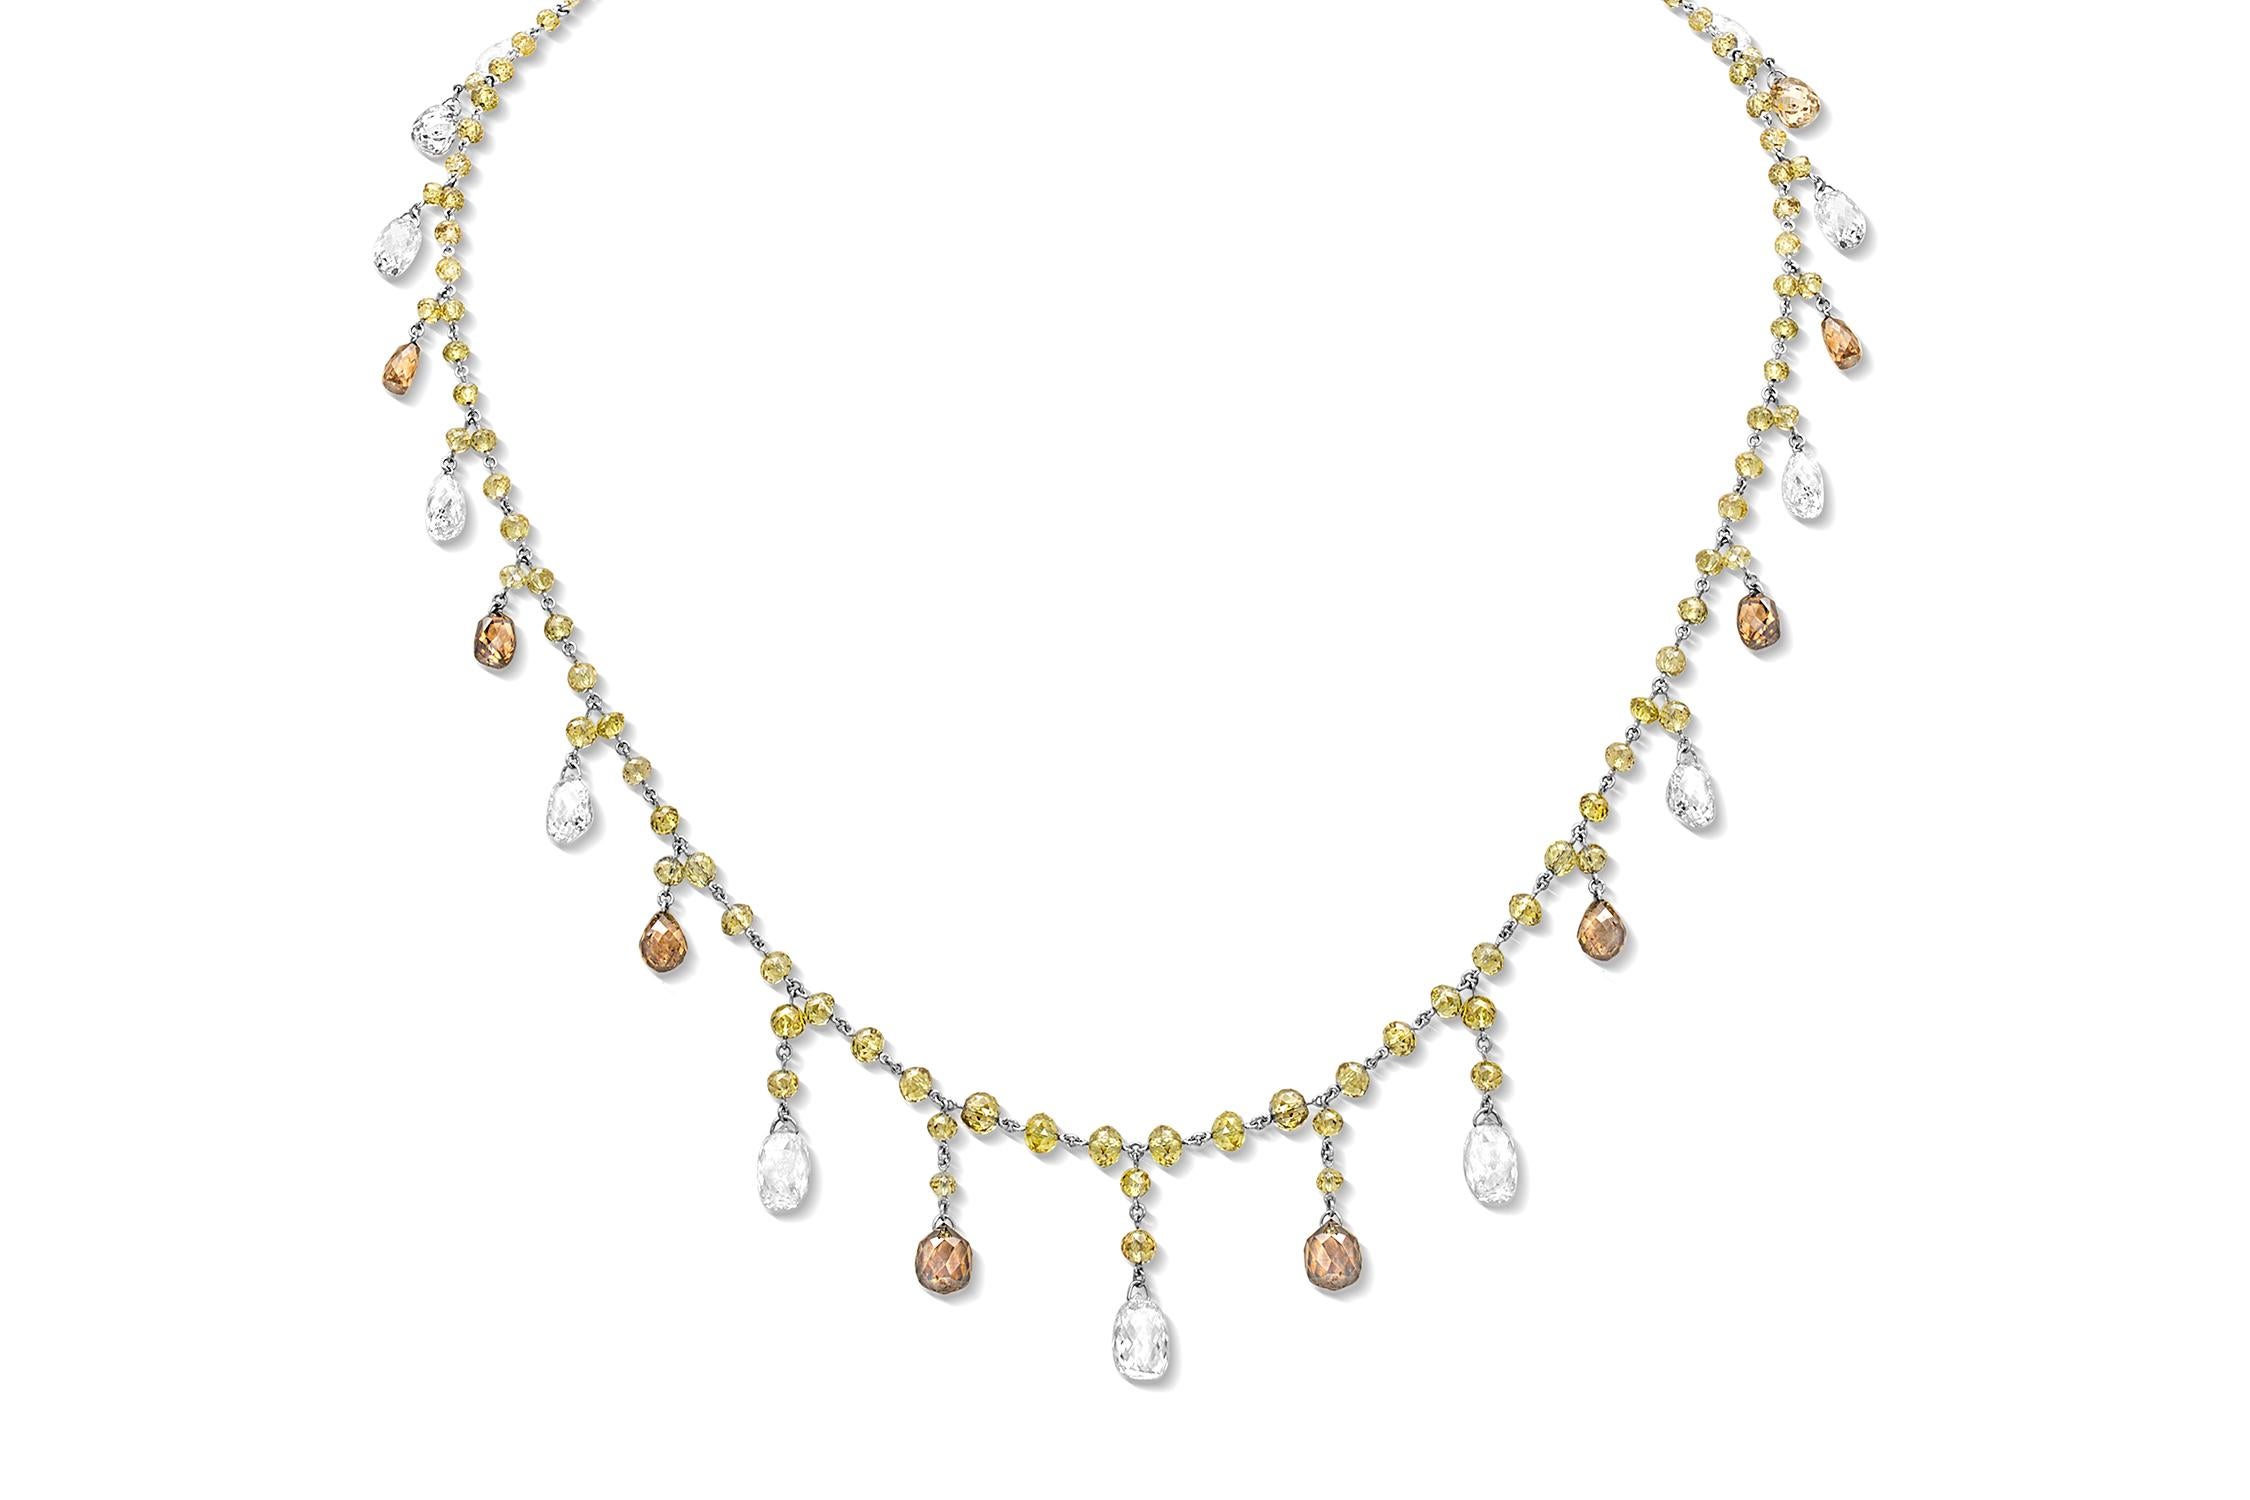 Briolette Cut CJ Charles Rivière Briolette Multi-Color Diamond Necklace For Sale